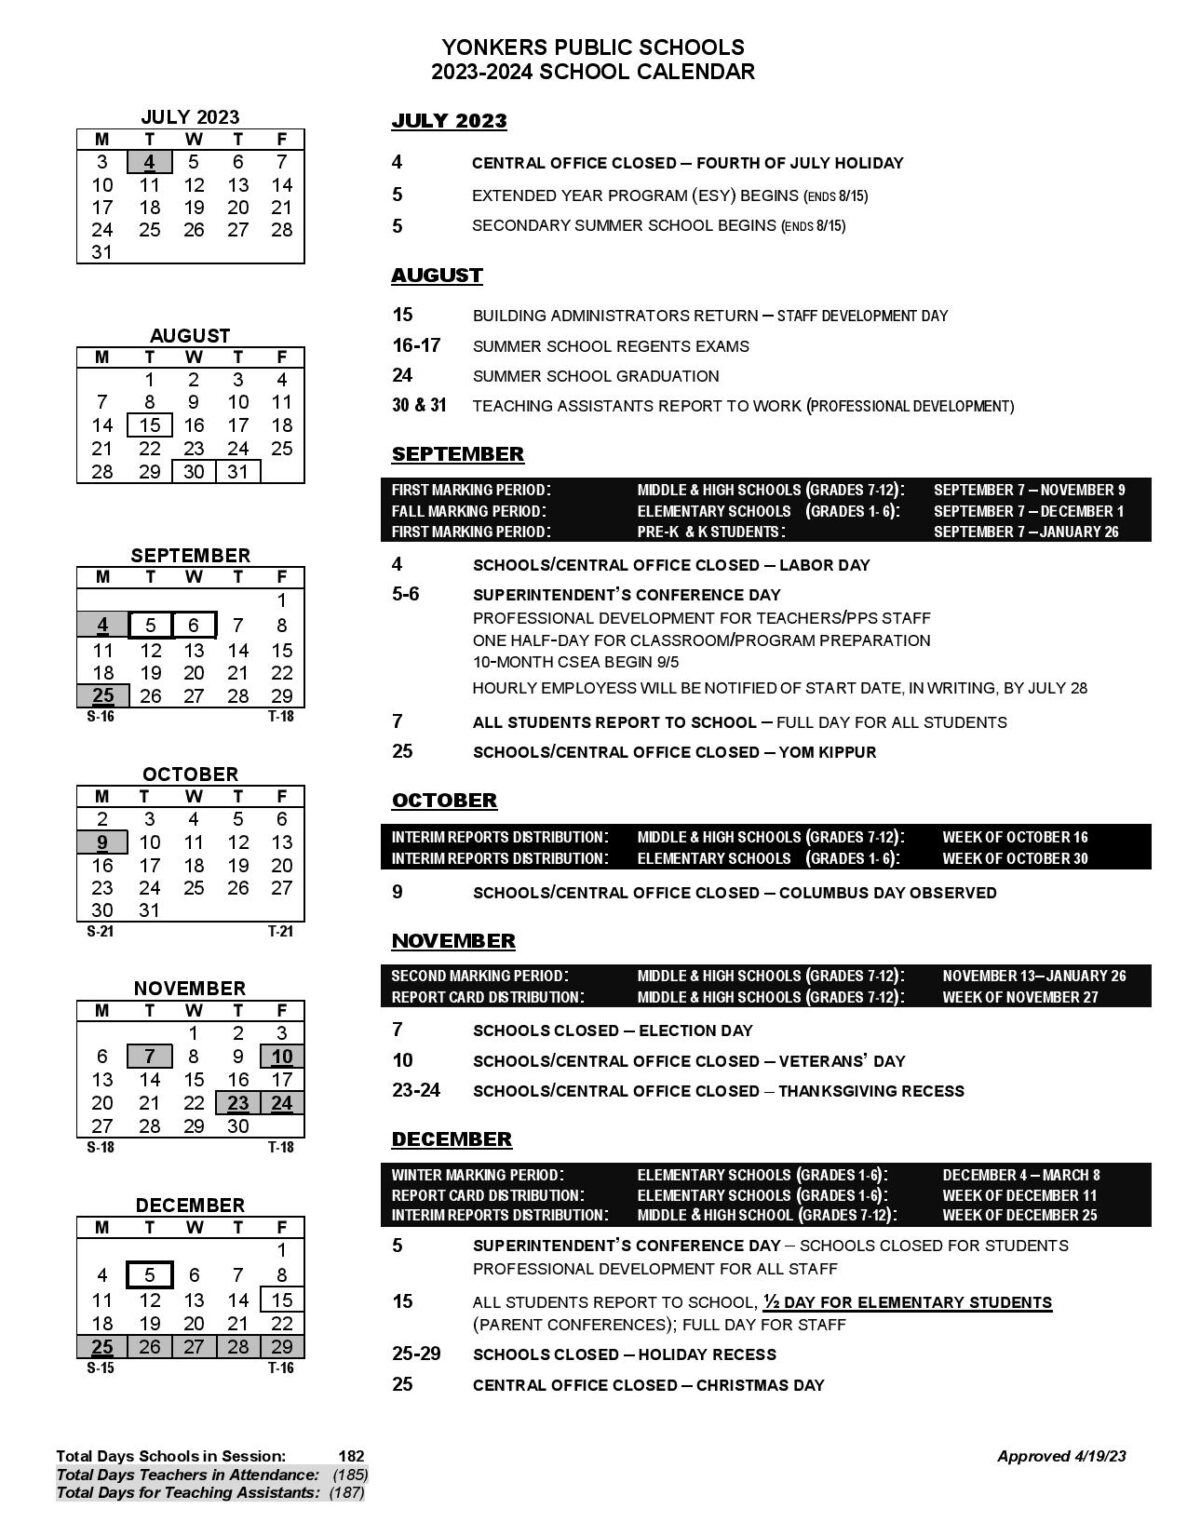 Yonkers Public Schools Calendar 2024 in PDF